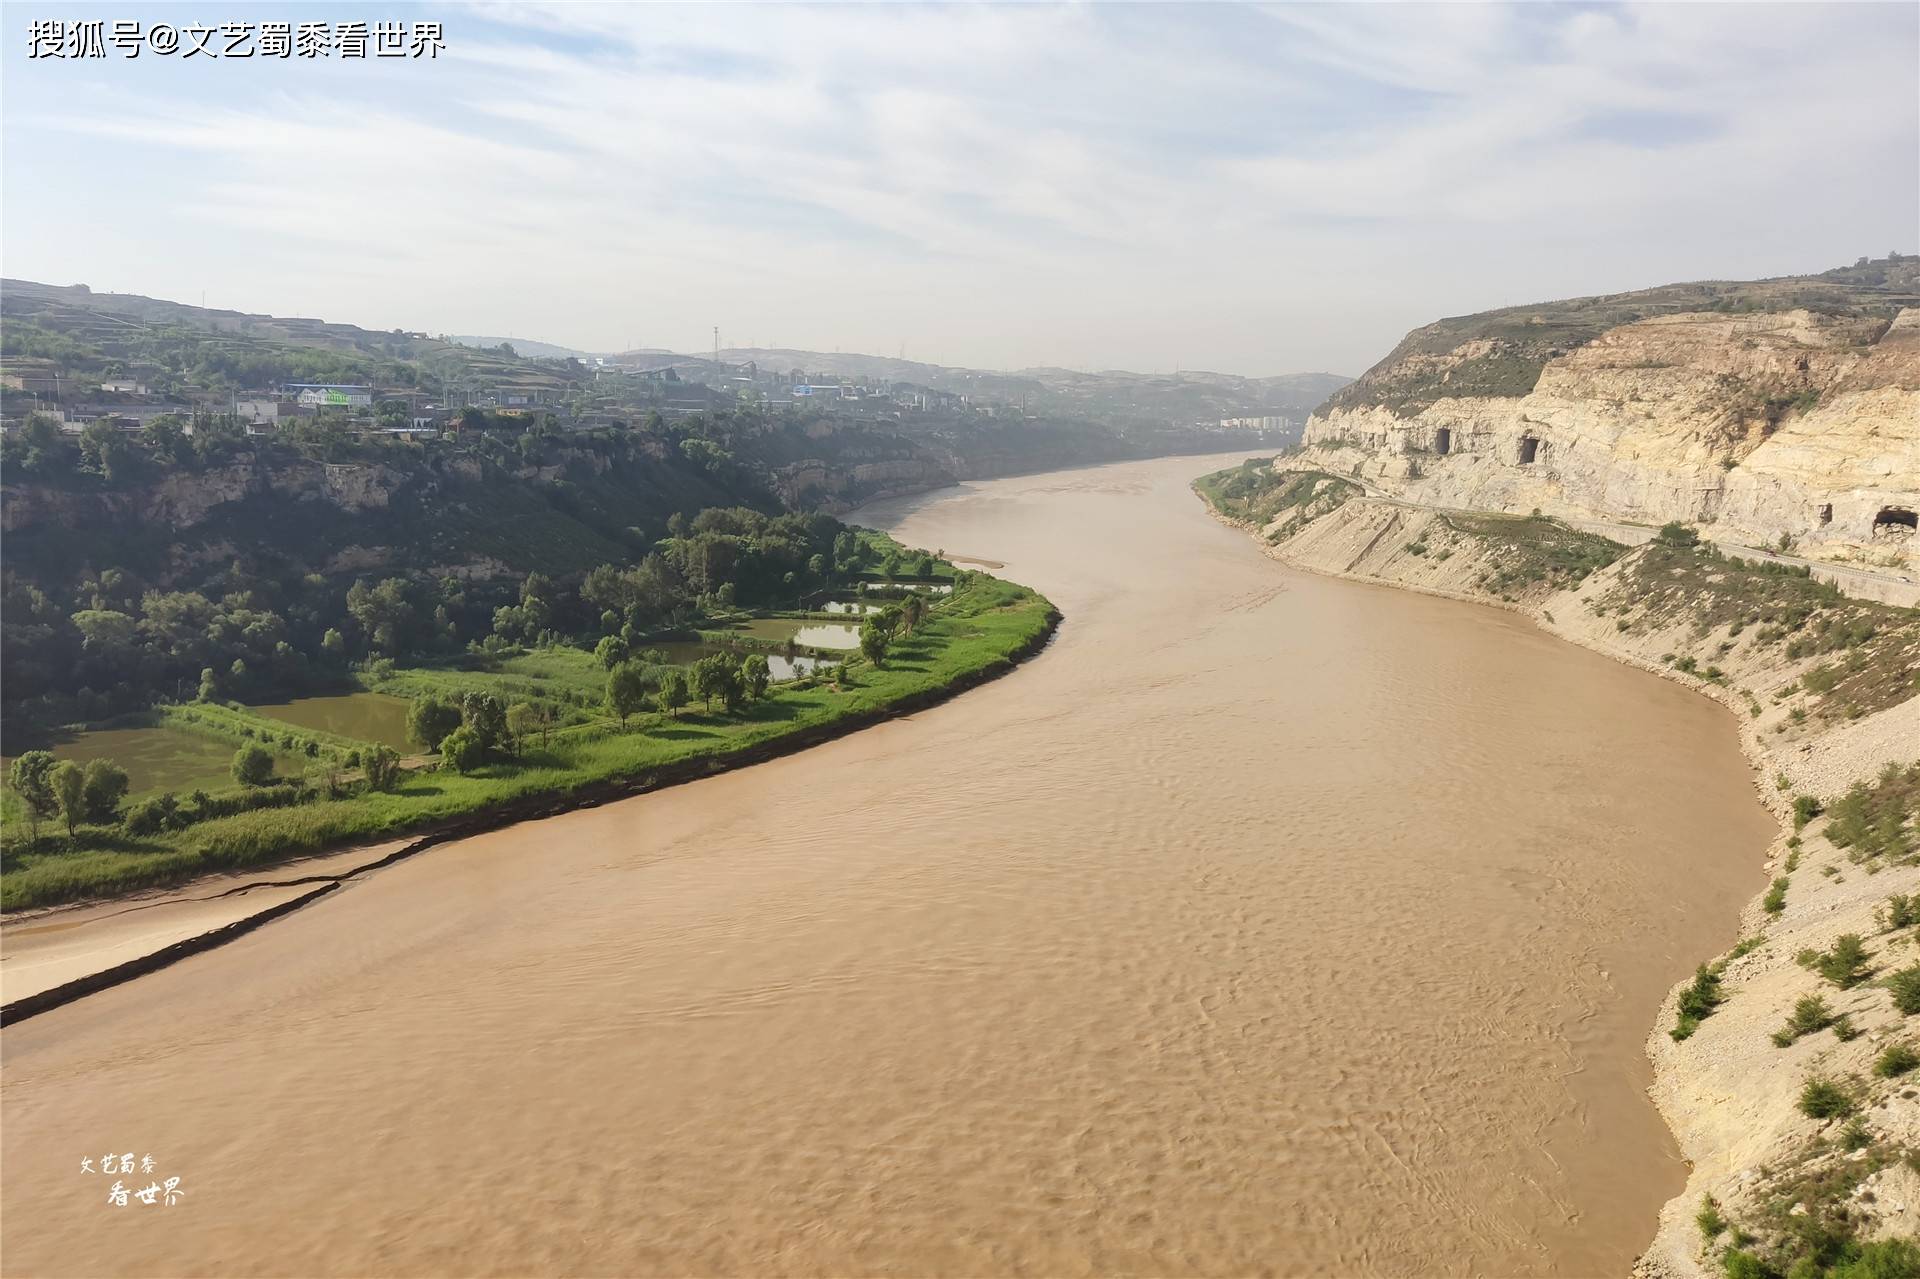 原创历史上开封被淹没过7次,黄河已是"地上悬河",可否挖沙清淤?